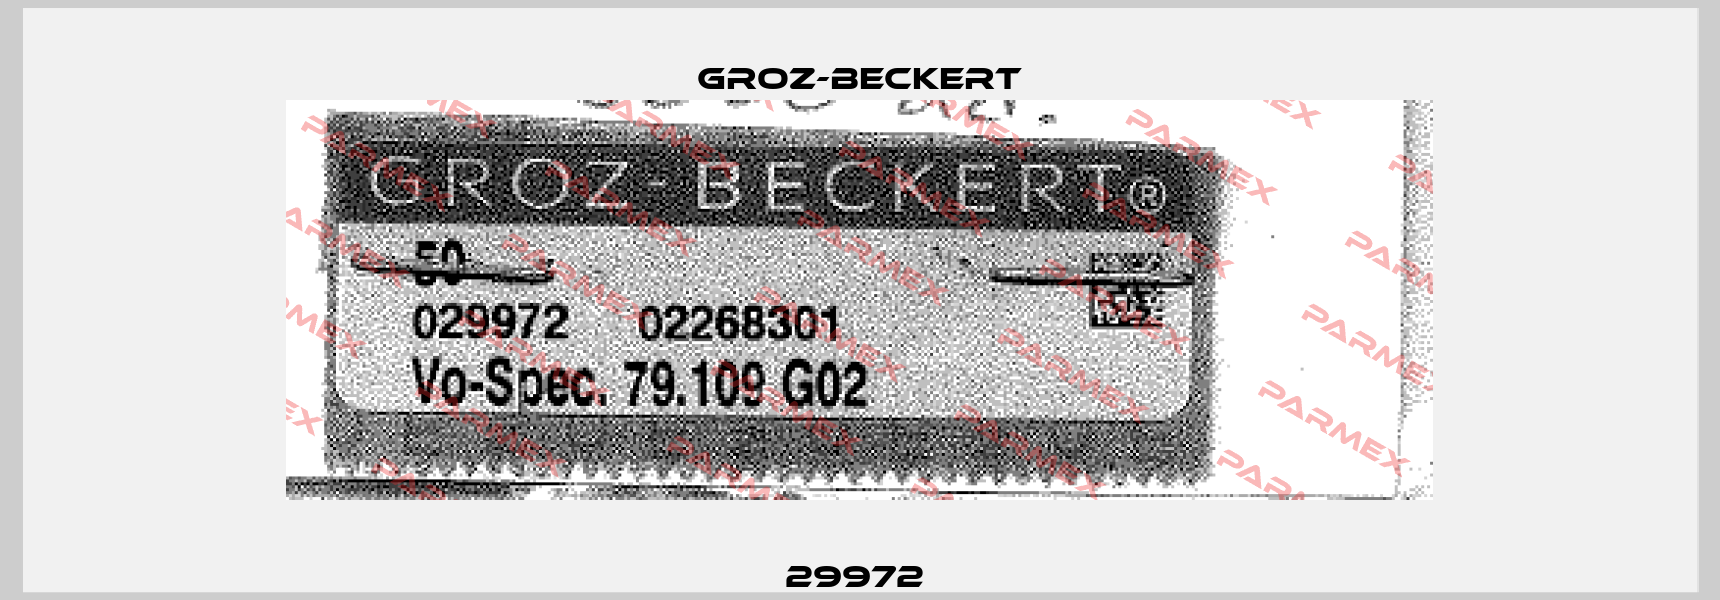 29972  Groz-Beckert